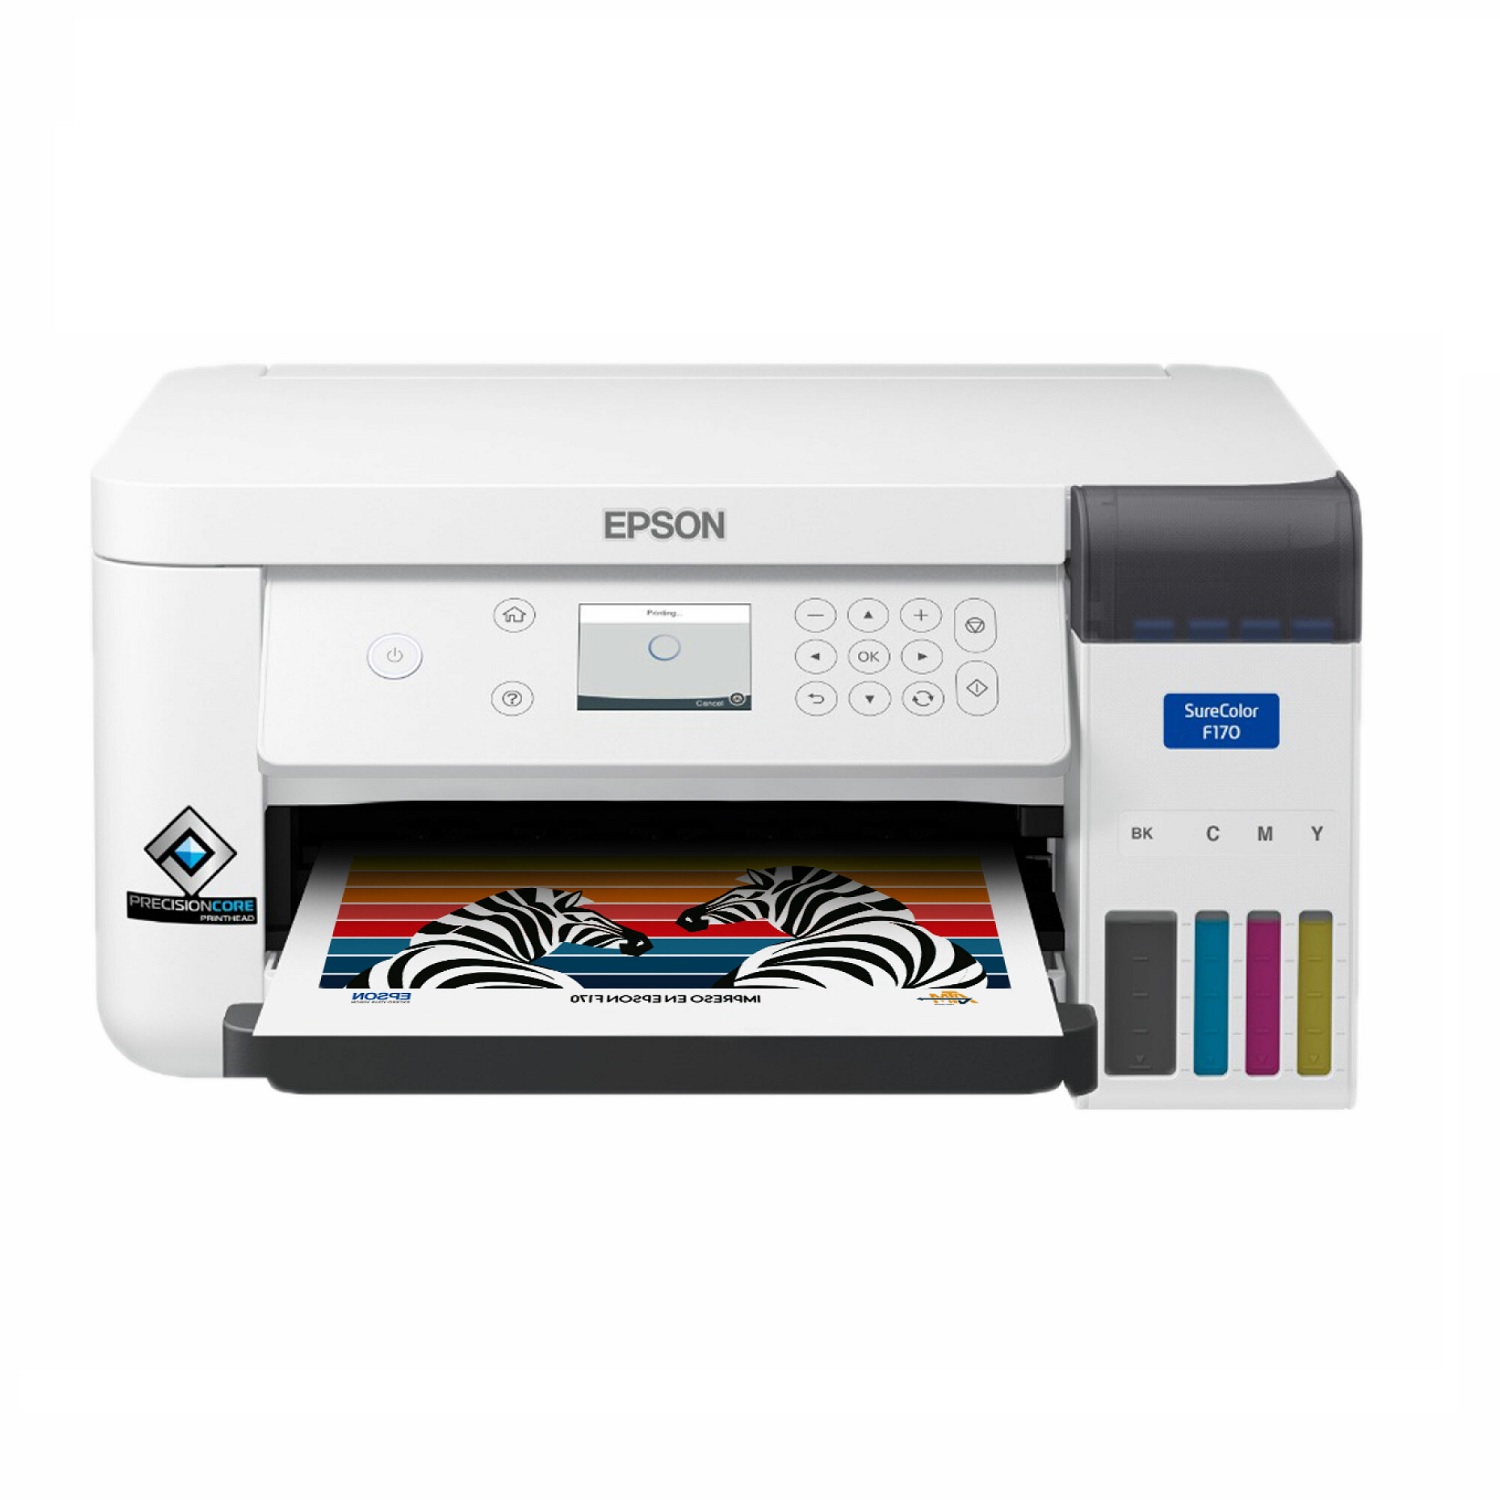 Epson F170 Impresora de sublimacion